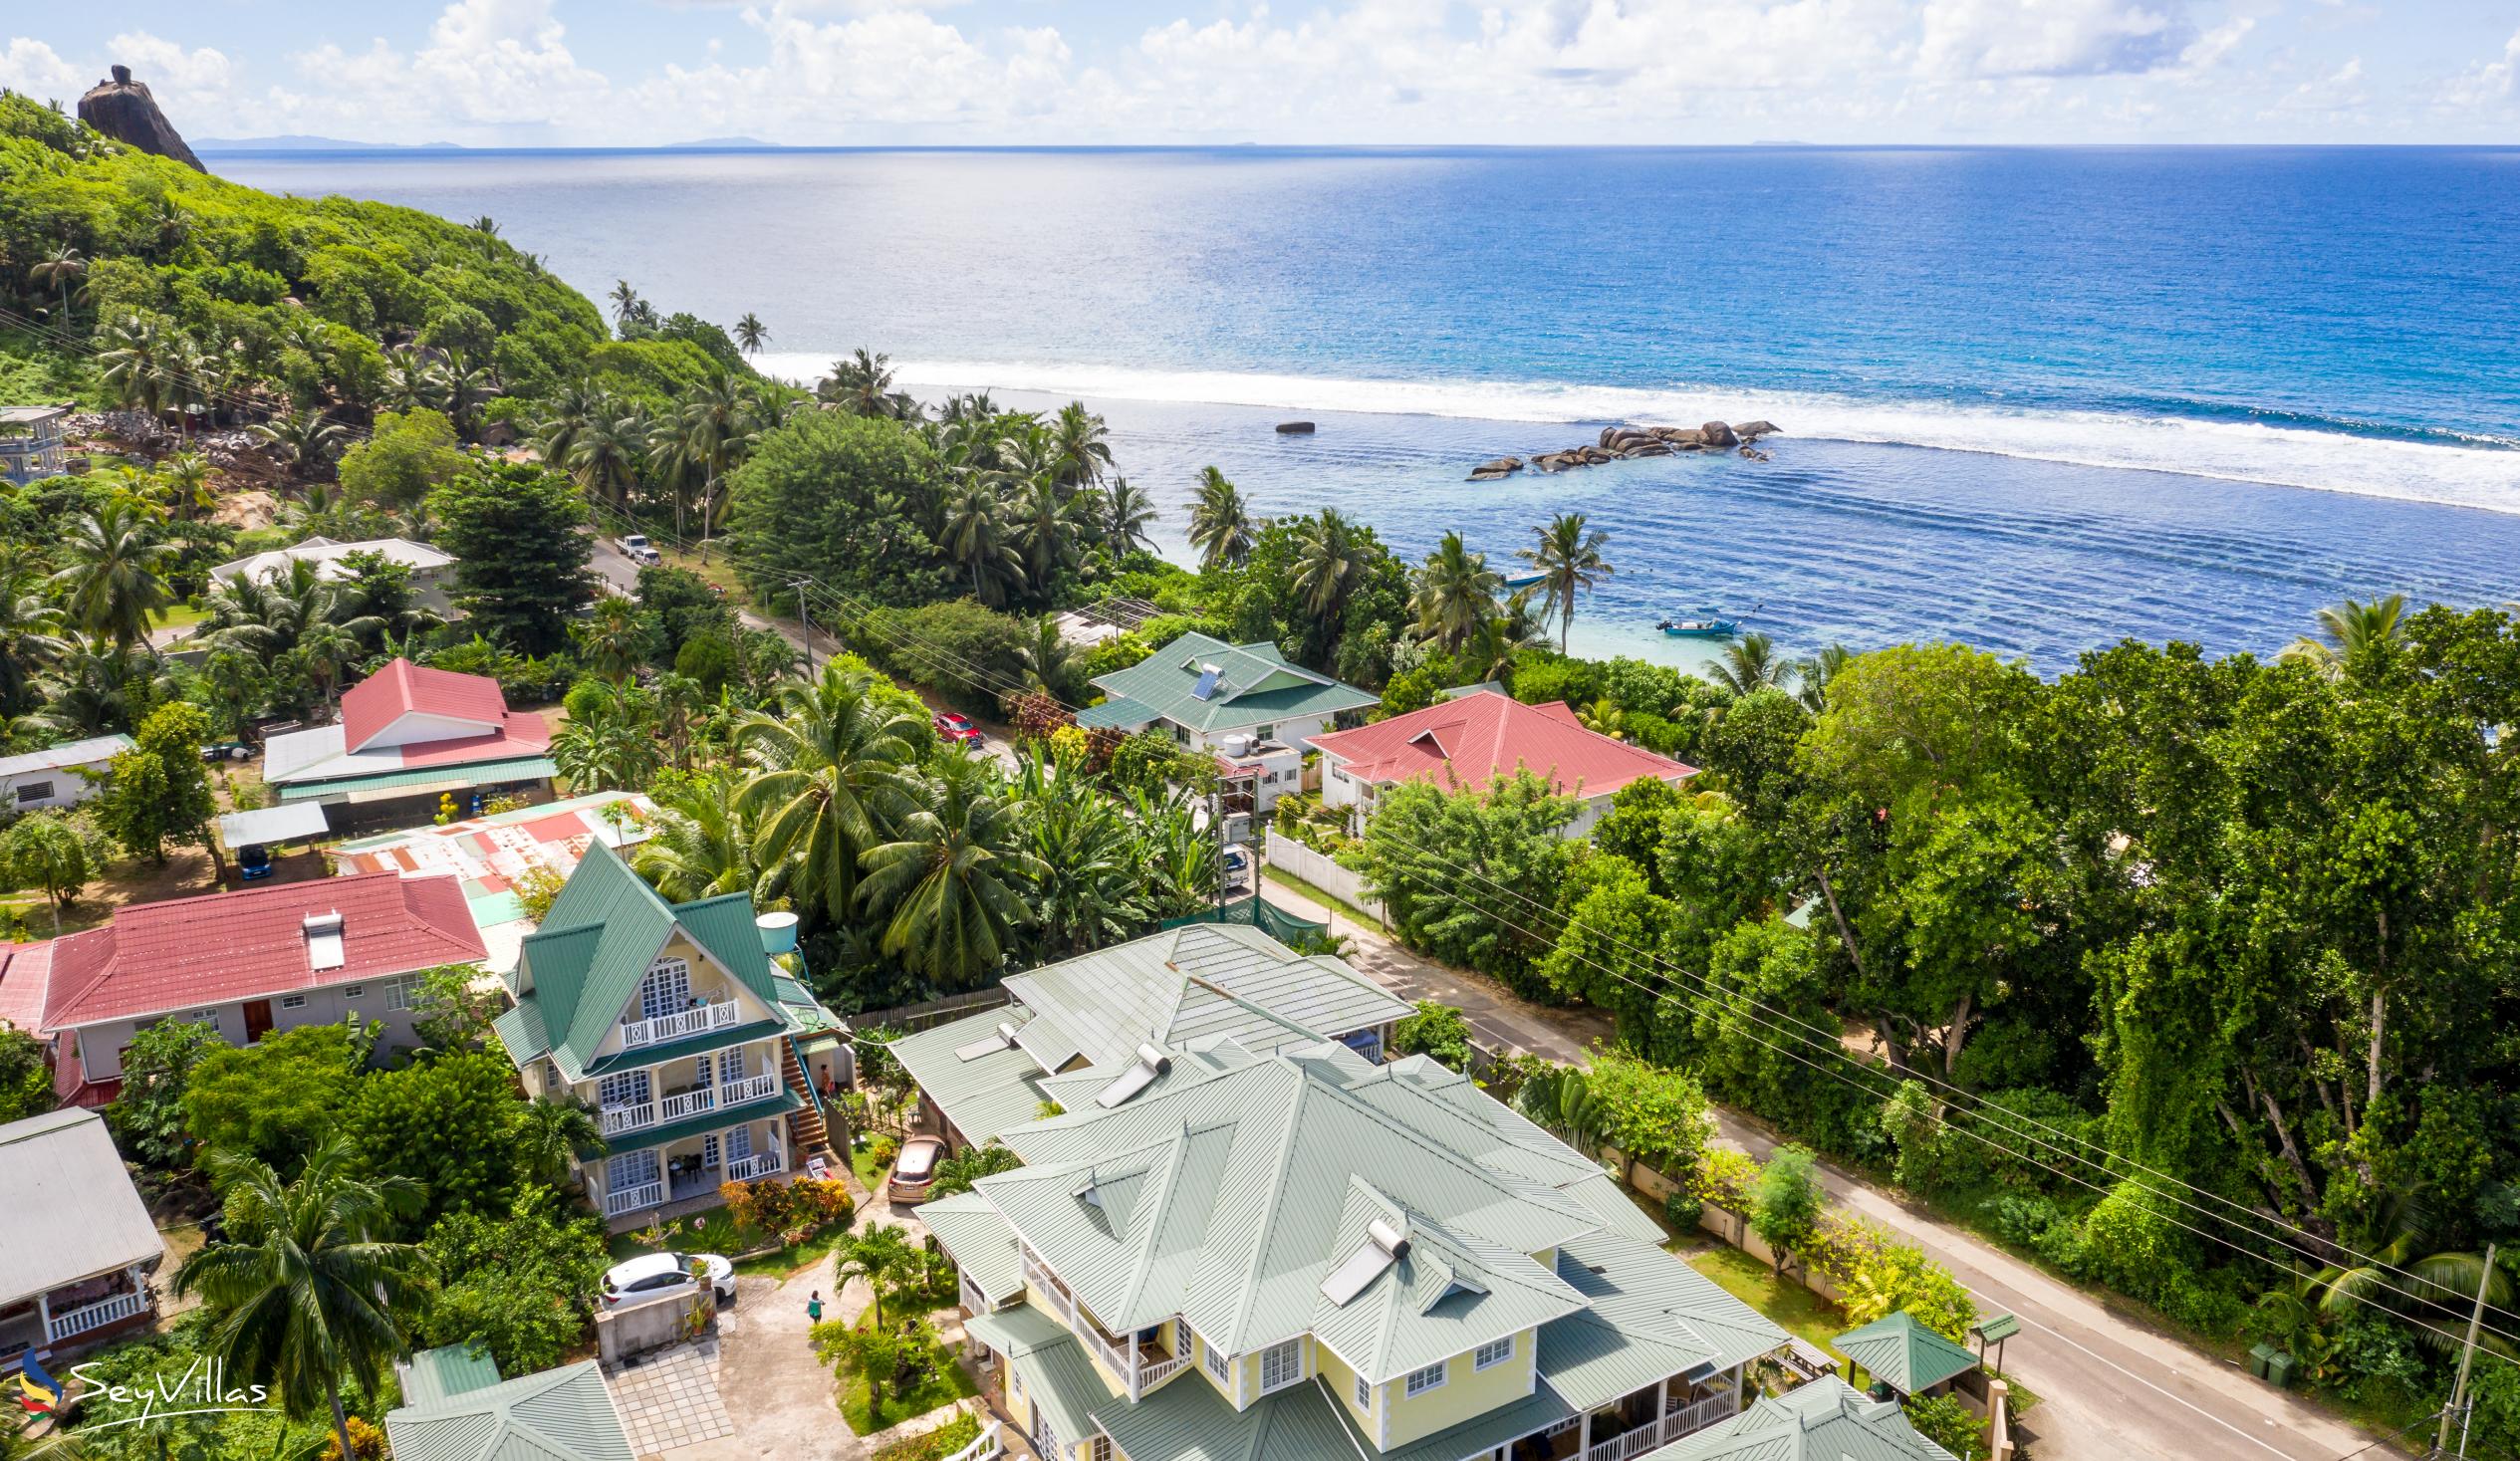 Foto 6: Captain's Villa - Aussenbereich - Mahé (Seychellen)